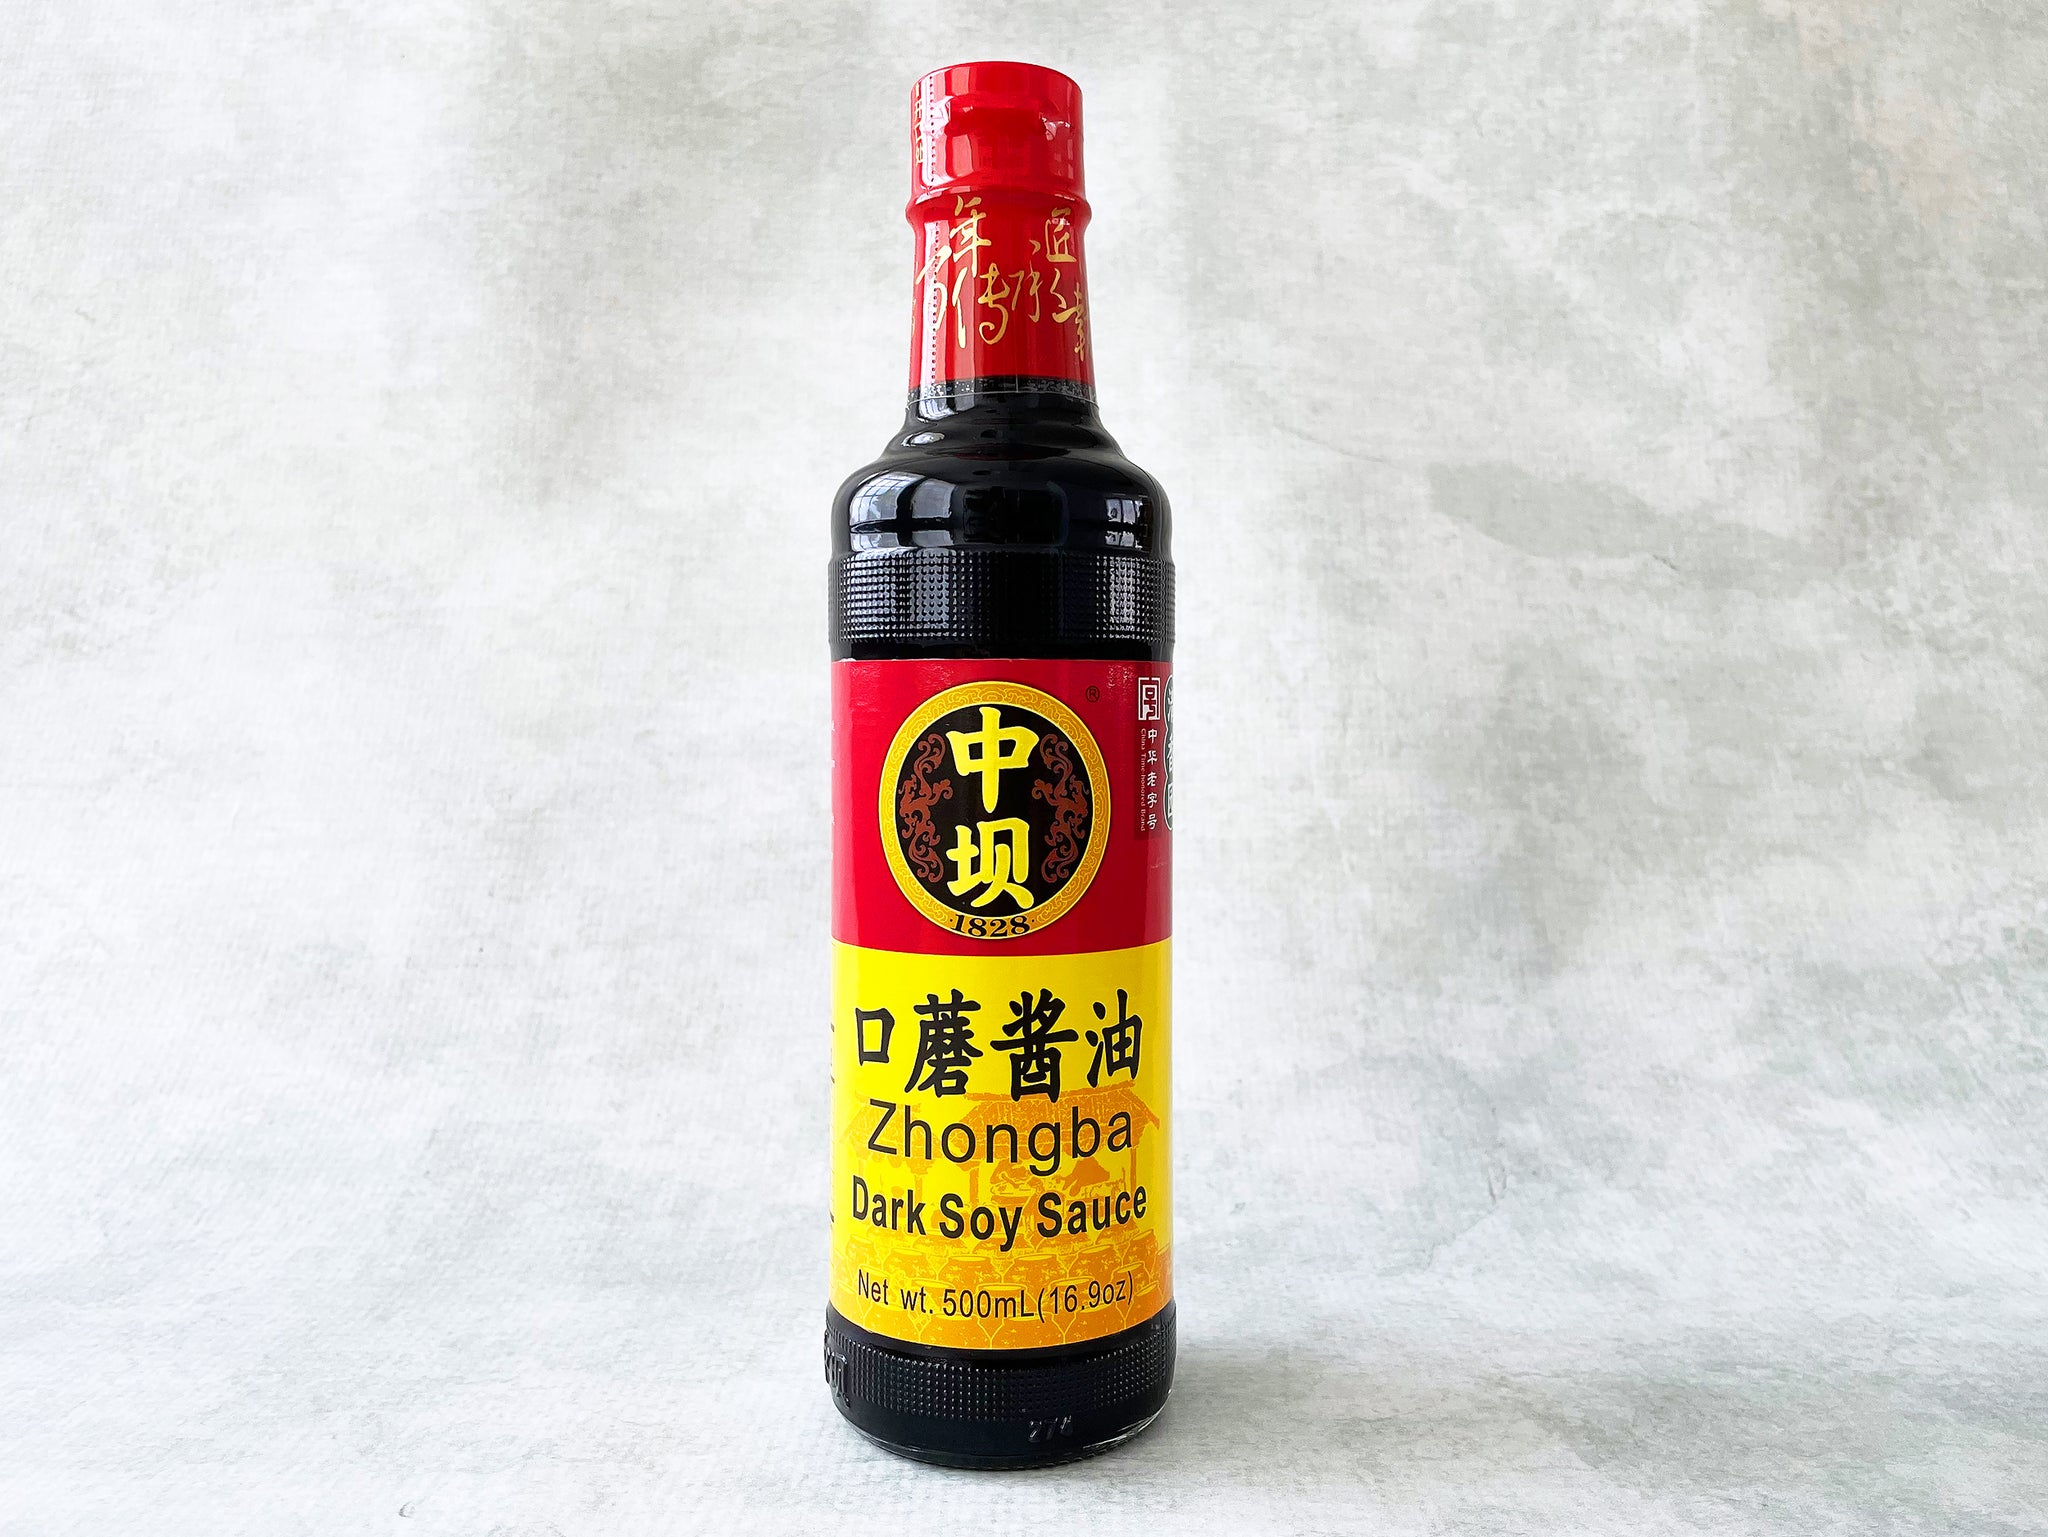 Zhongba Dark Soy Sauce